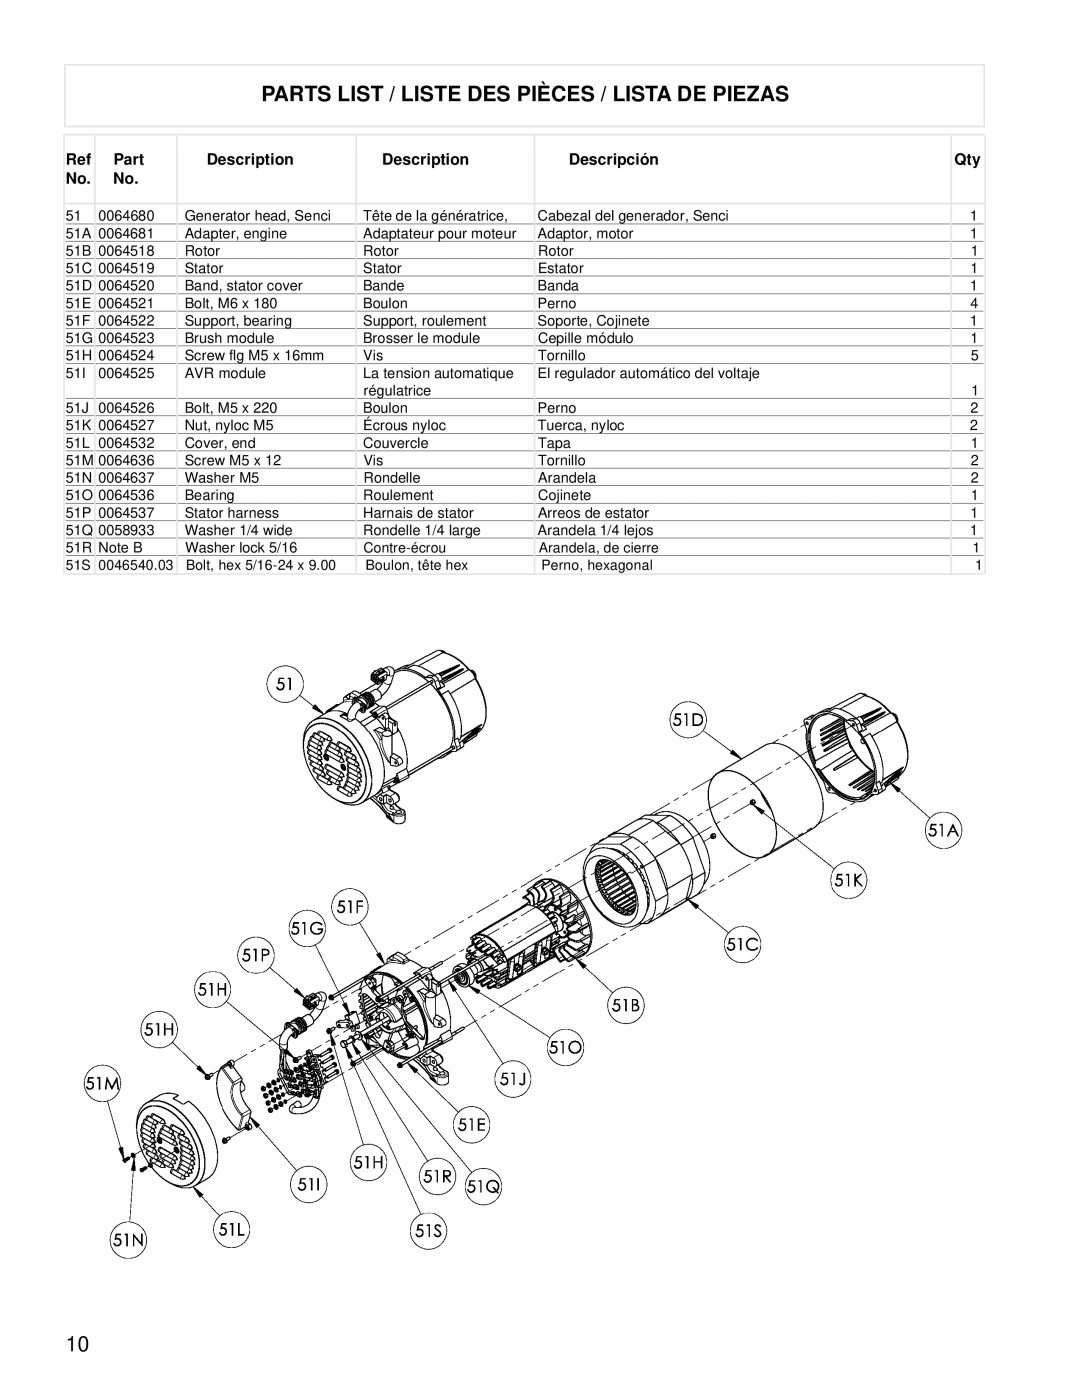 Powermate PM0435255 manual Parts List / Liste Des Pièces / Lista De Piezas, Description, Descripción 